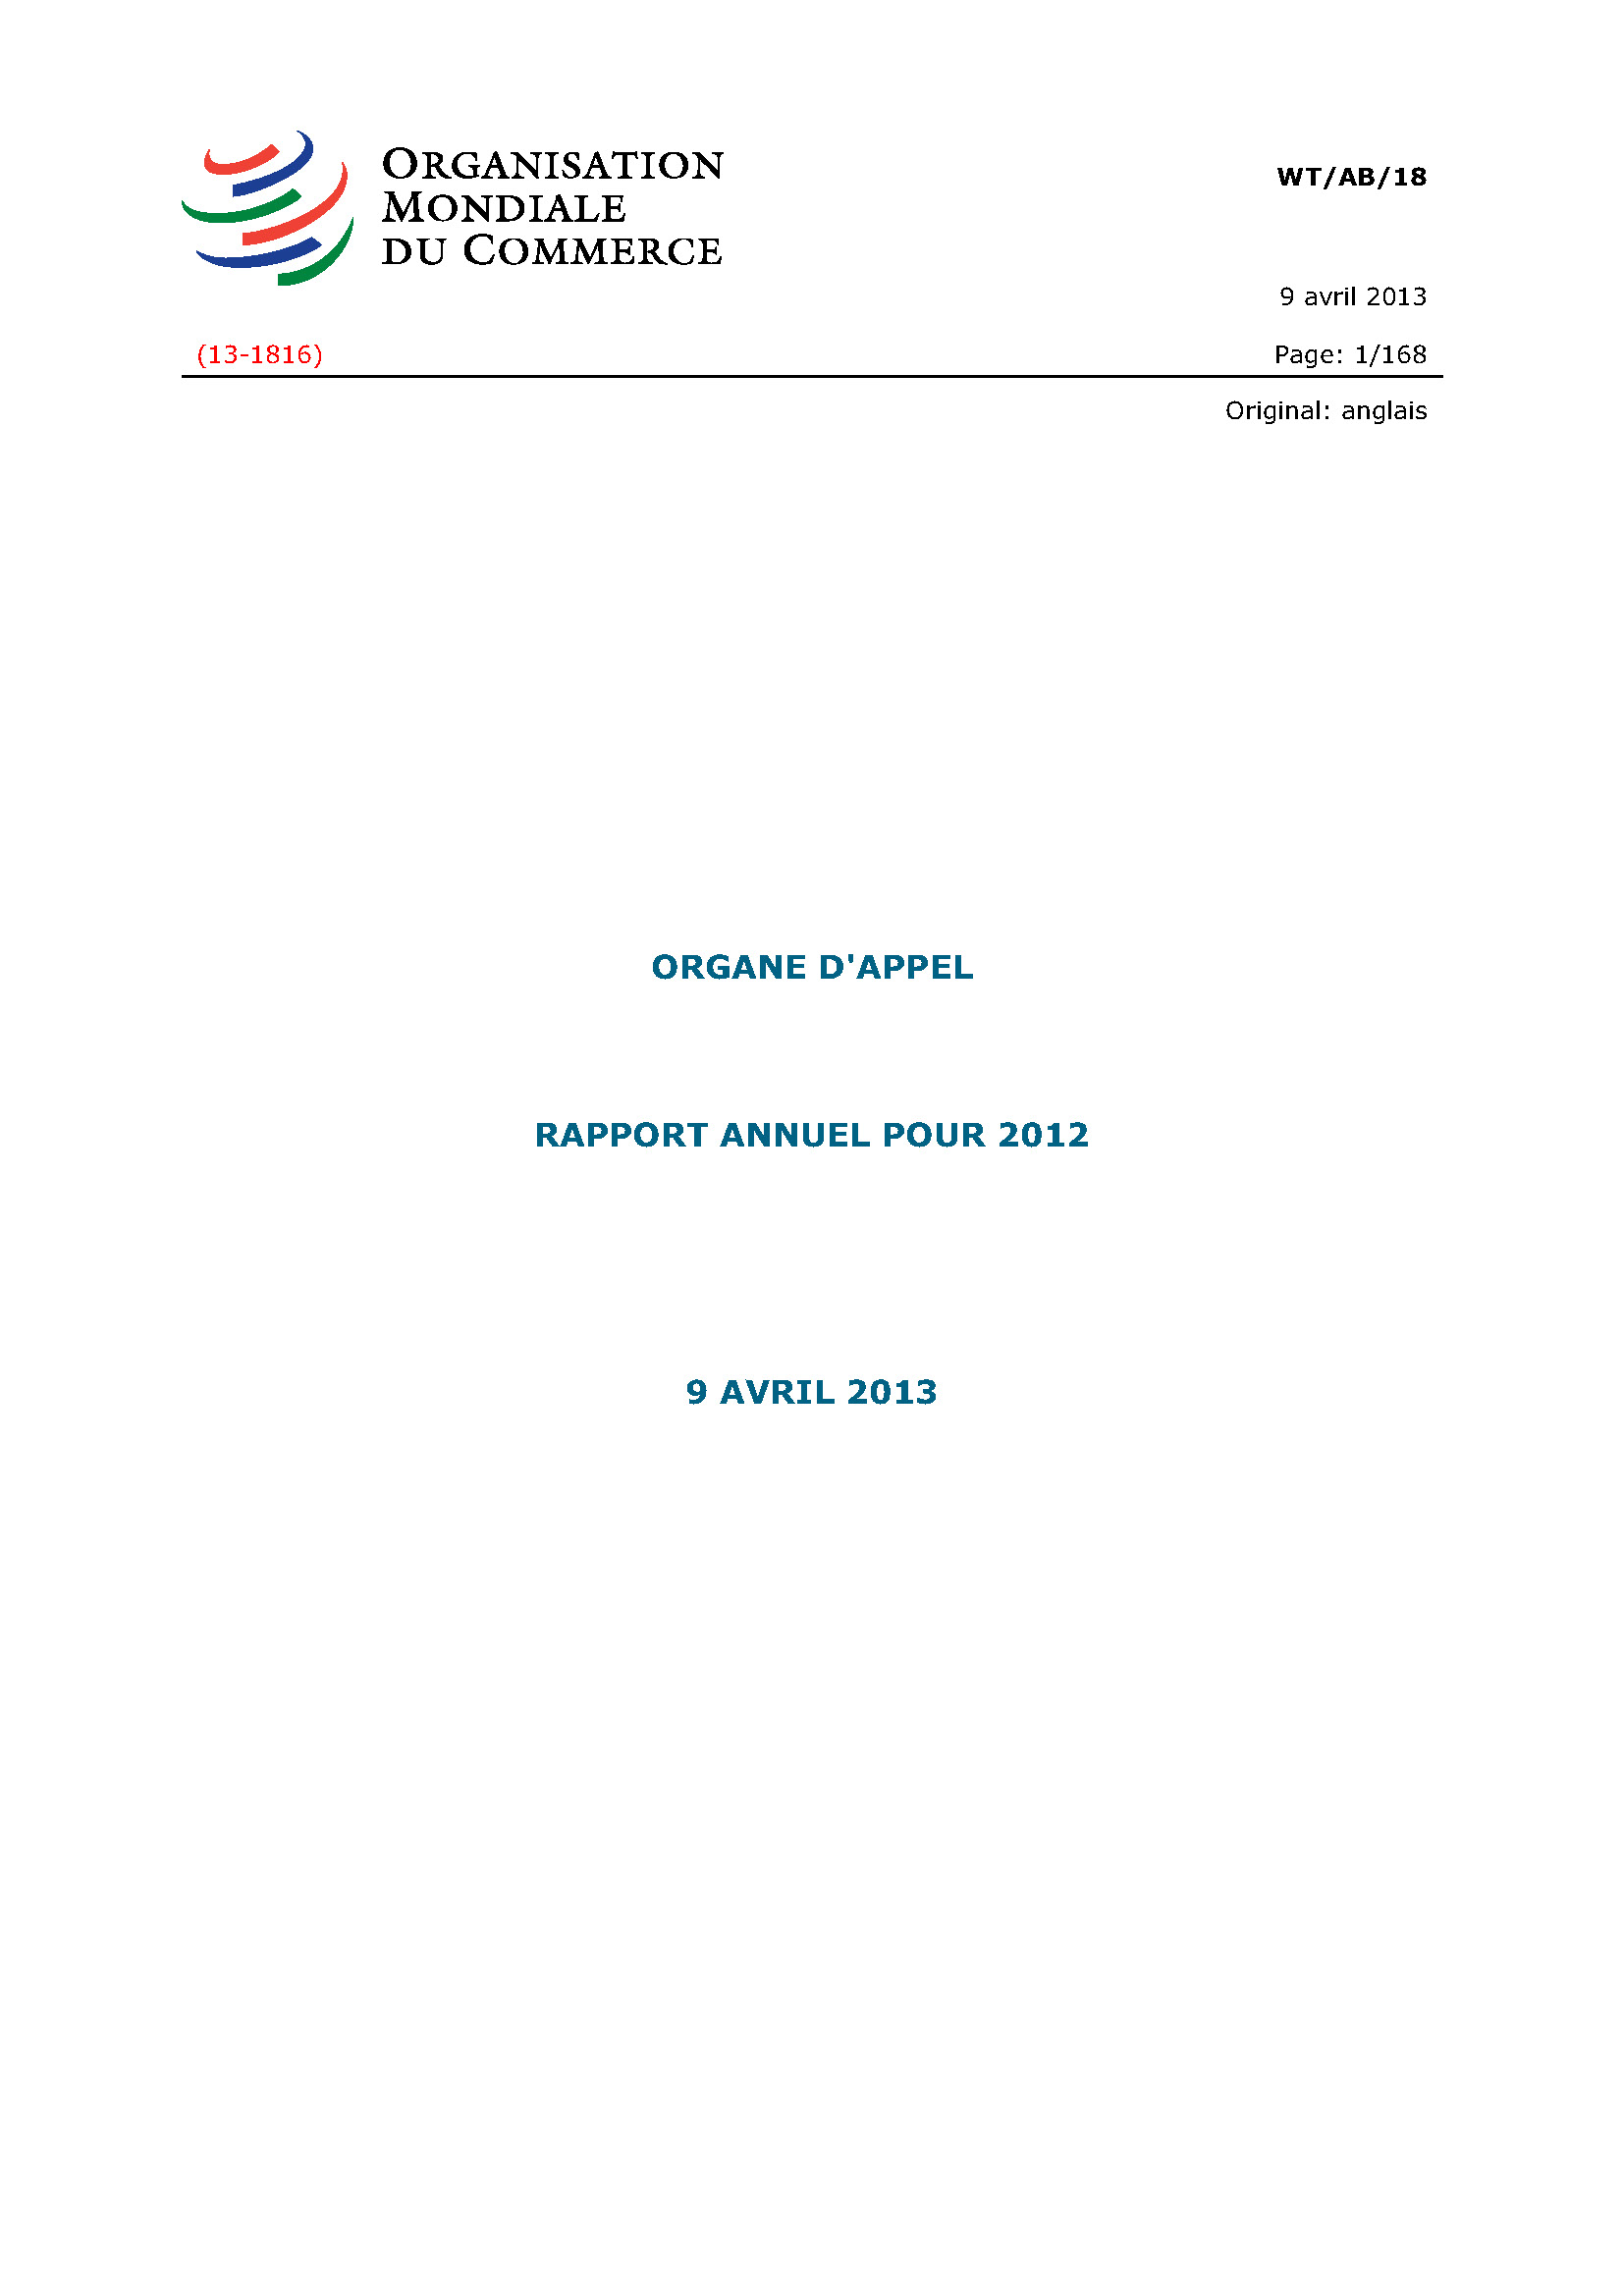 image of Rapport annuel de l’organe d’appel pour 2012